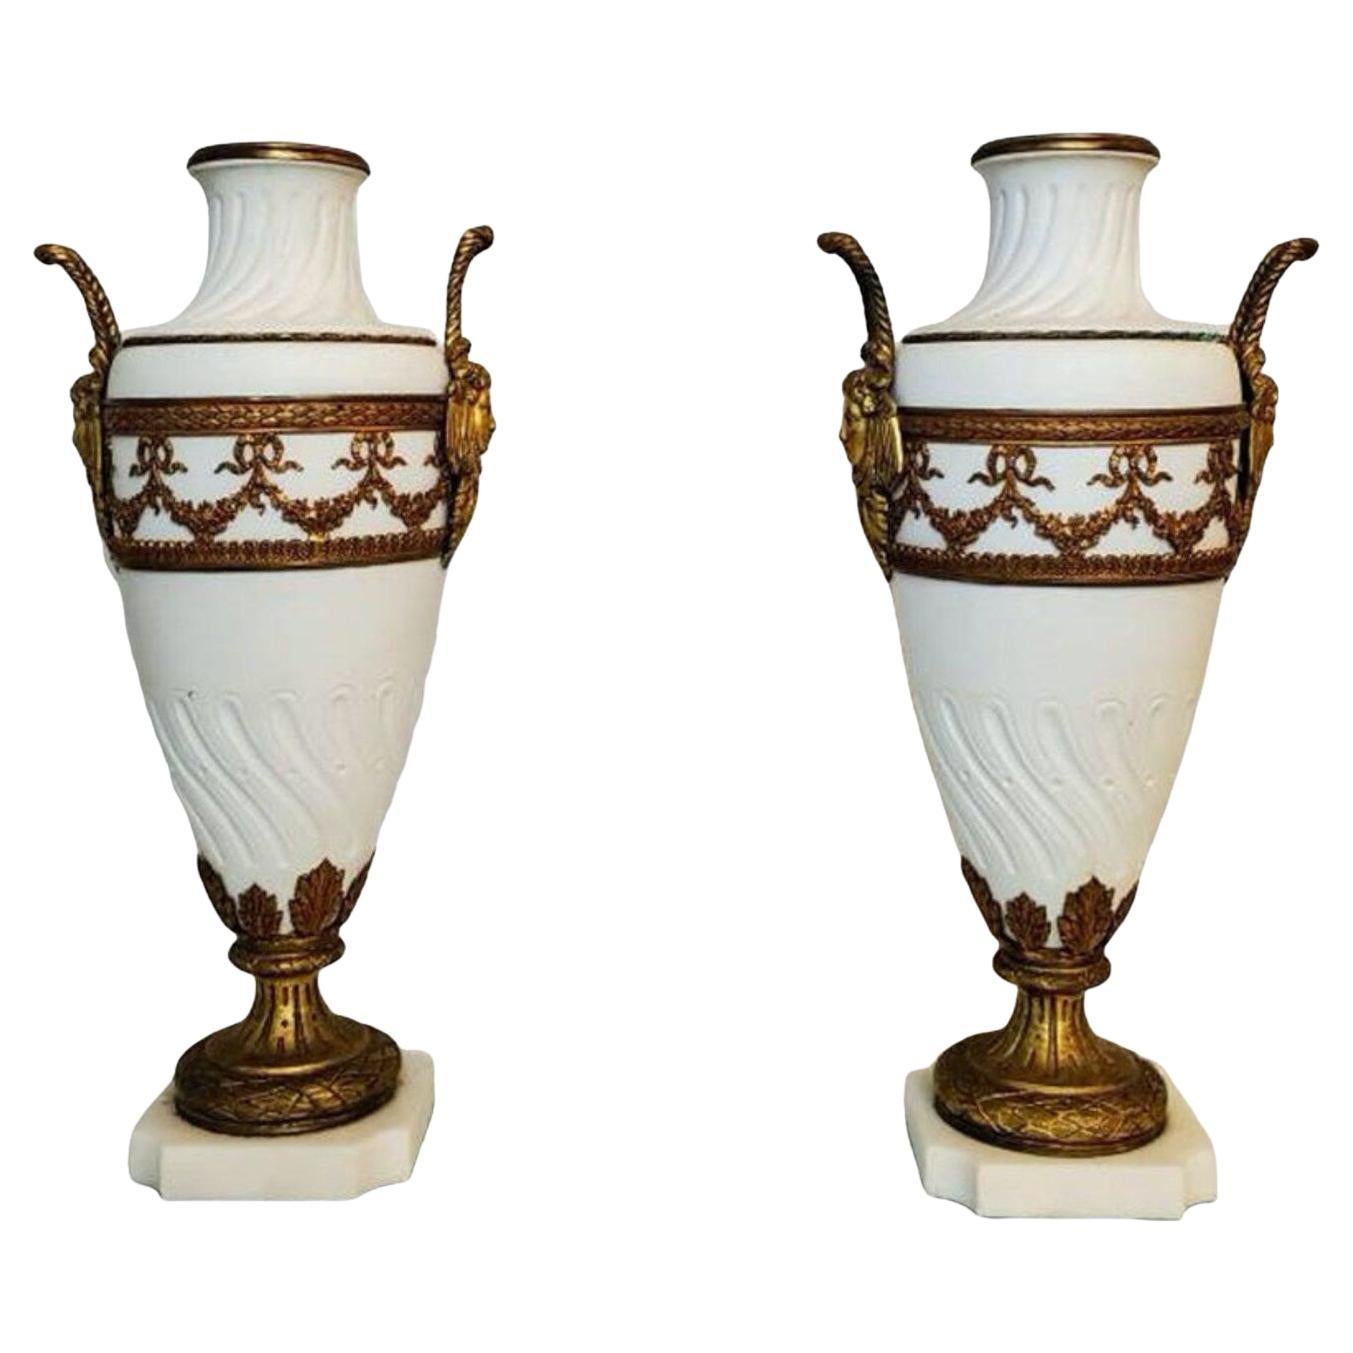 Paire d'urnes néoclassiques françaises du 19ème siècle de style Louis XVI